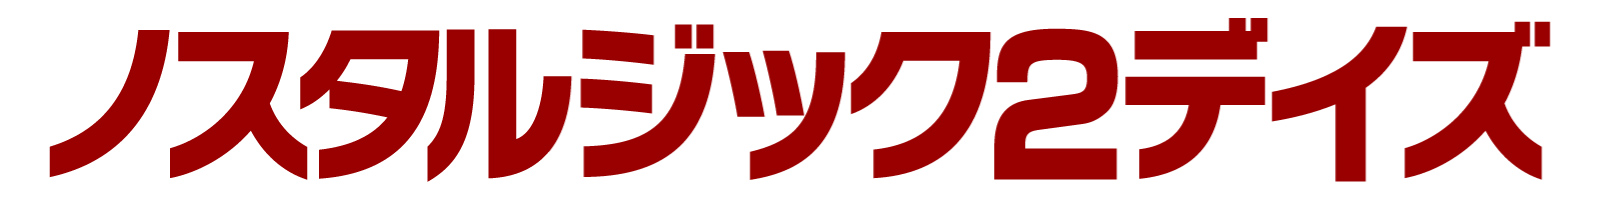 ノスタルジック2デイズ カタカナ赤字ロゴ